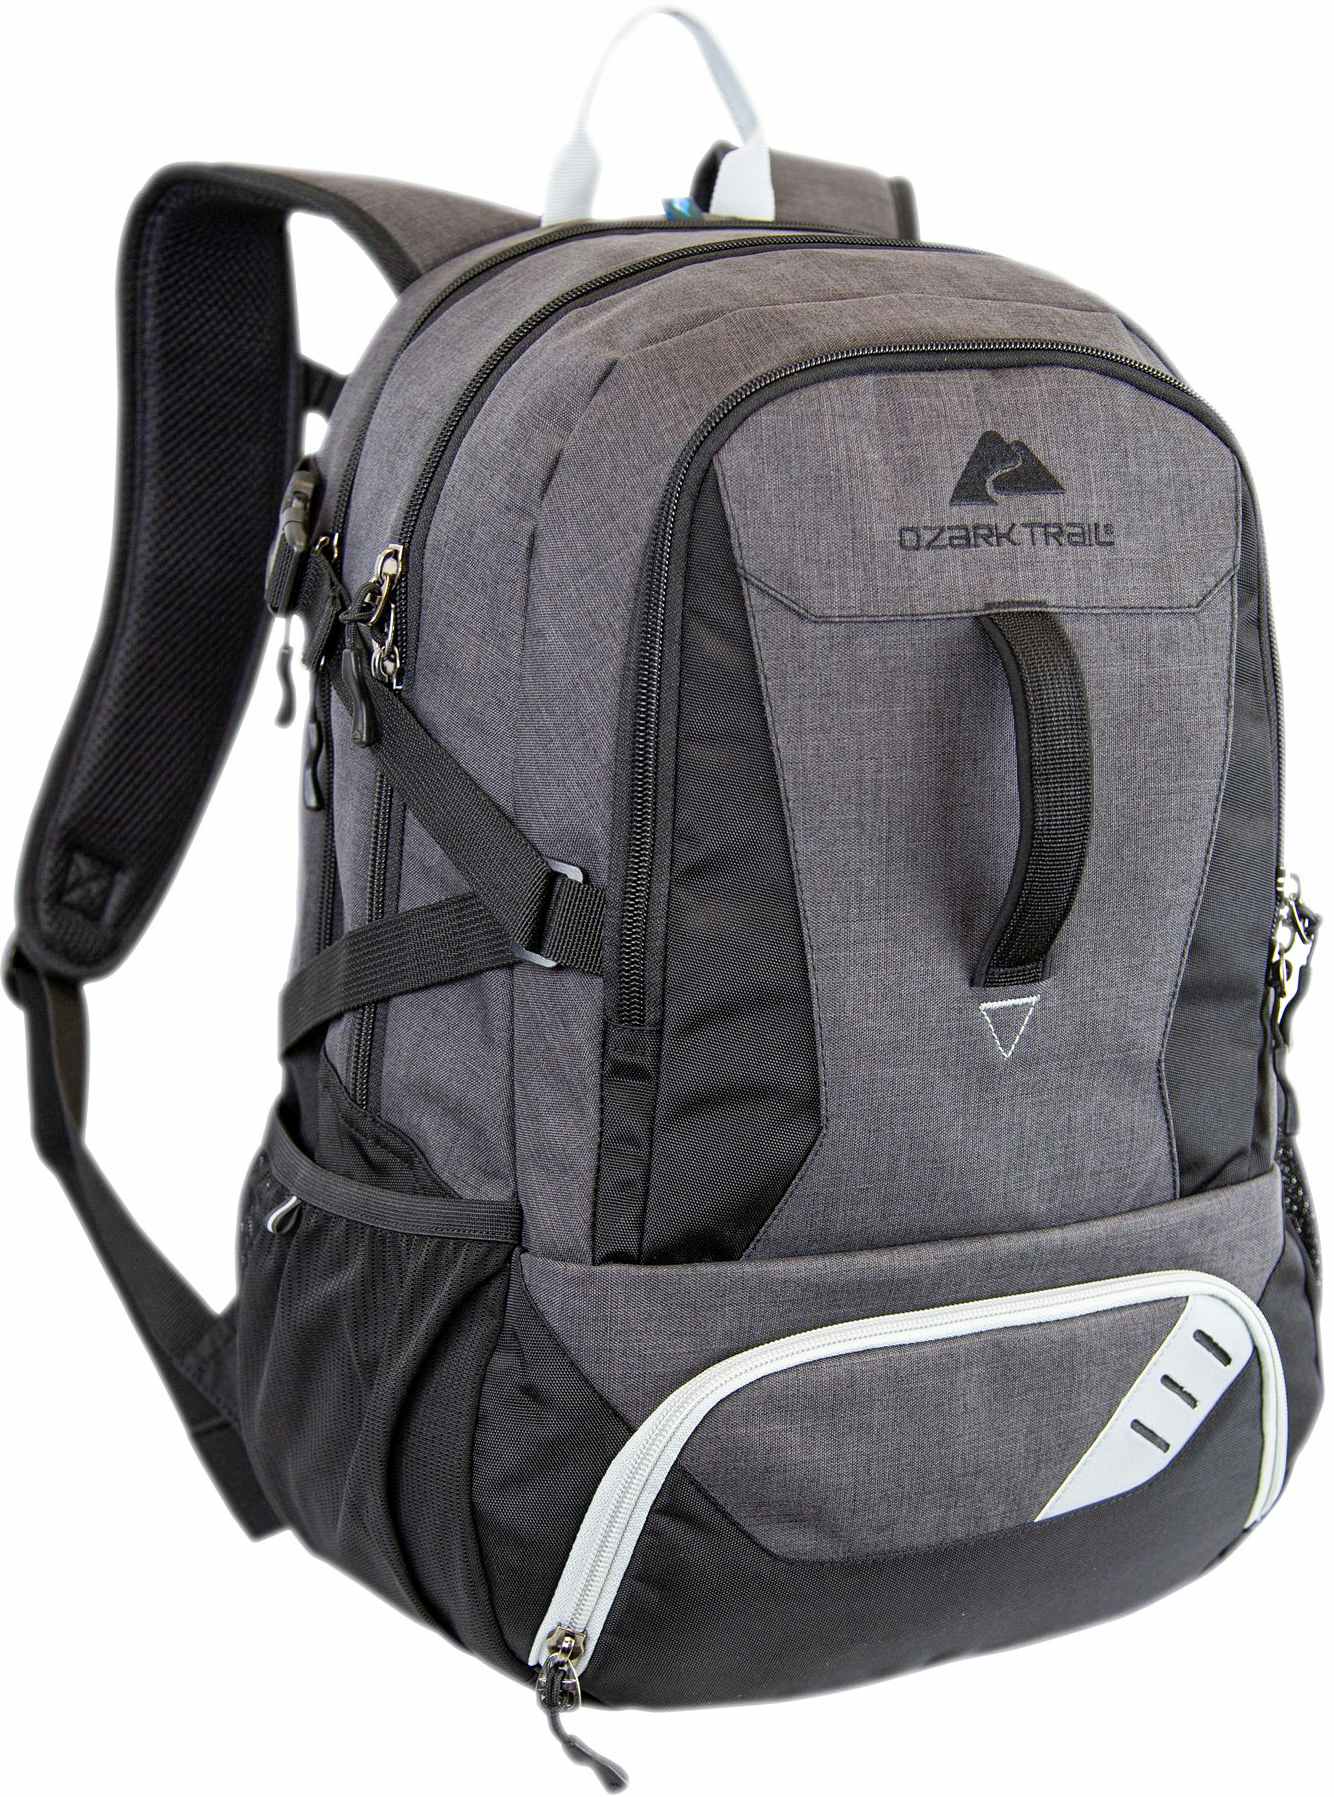 walmart ozark trail cooler backpack